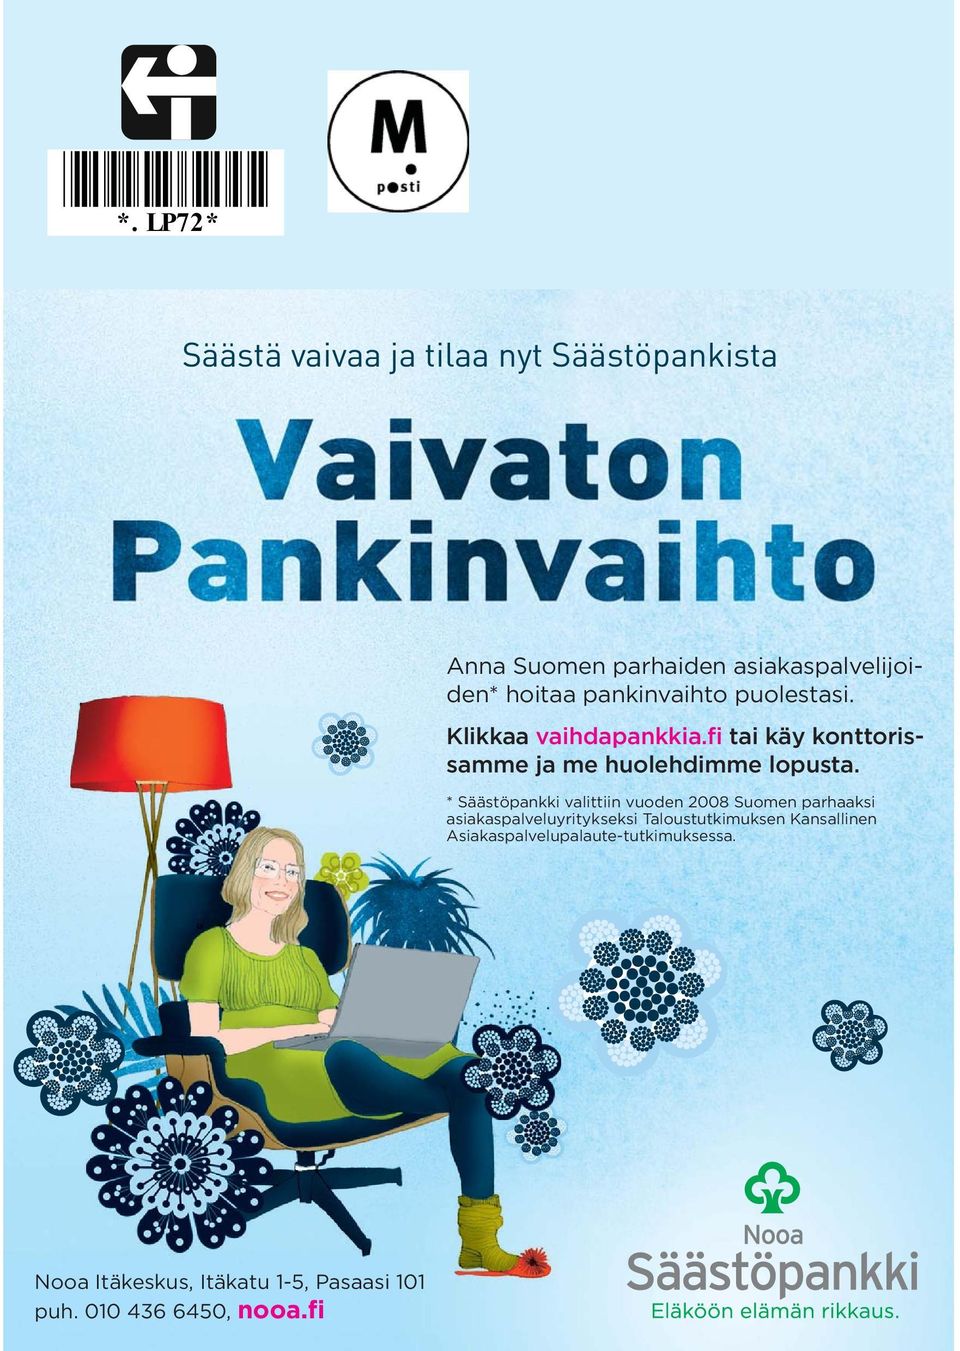 * Säästöpankki valittiin vuoden 2008 Suomen parhaaksi asiakaspalveluyritykseksi Taloustutkimuksen